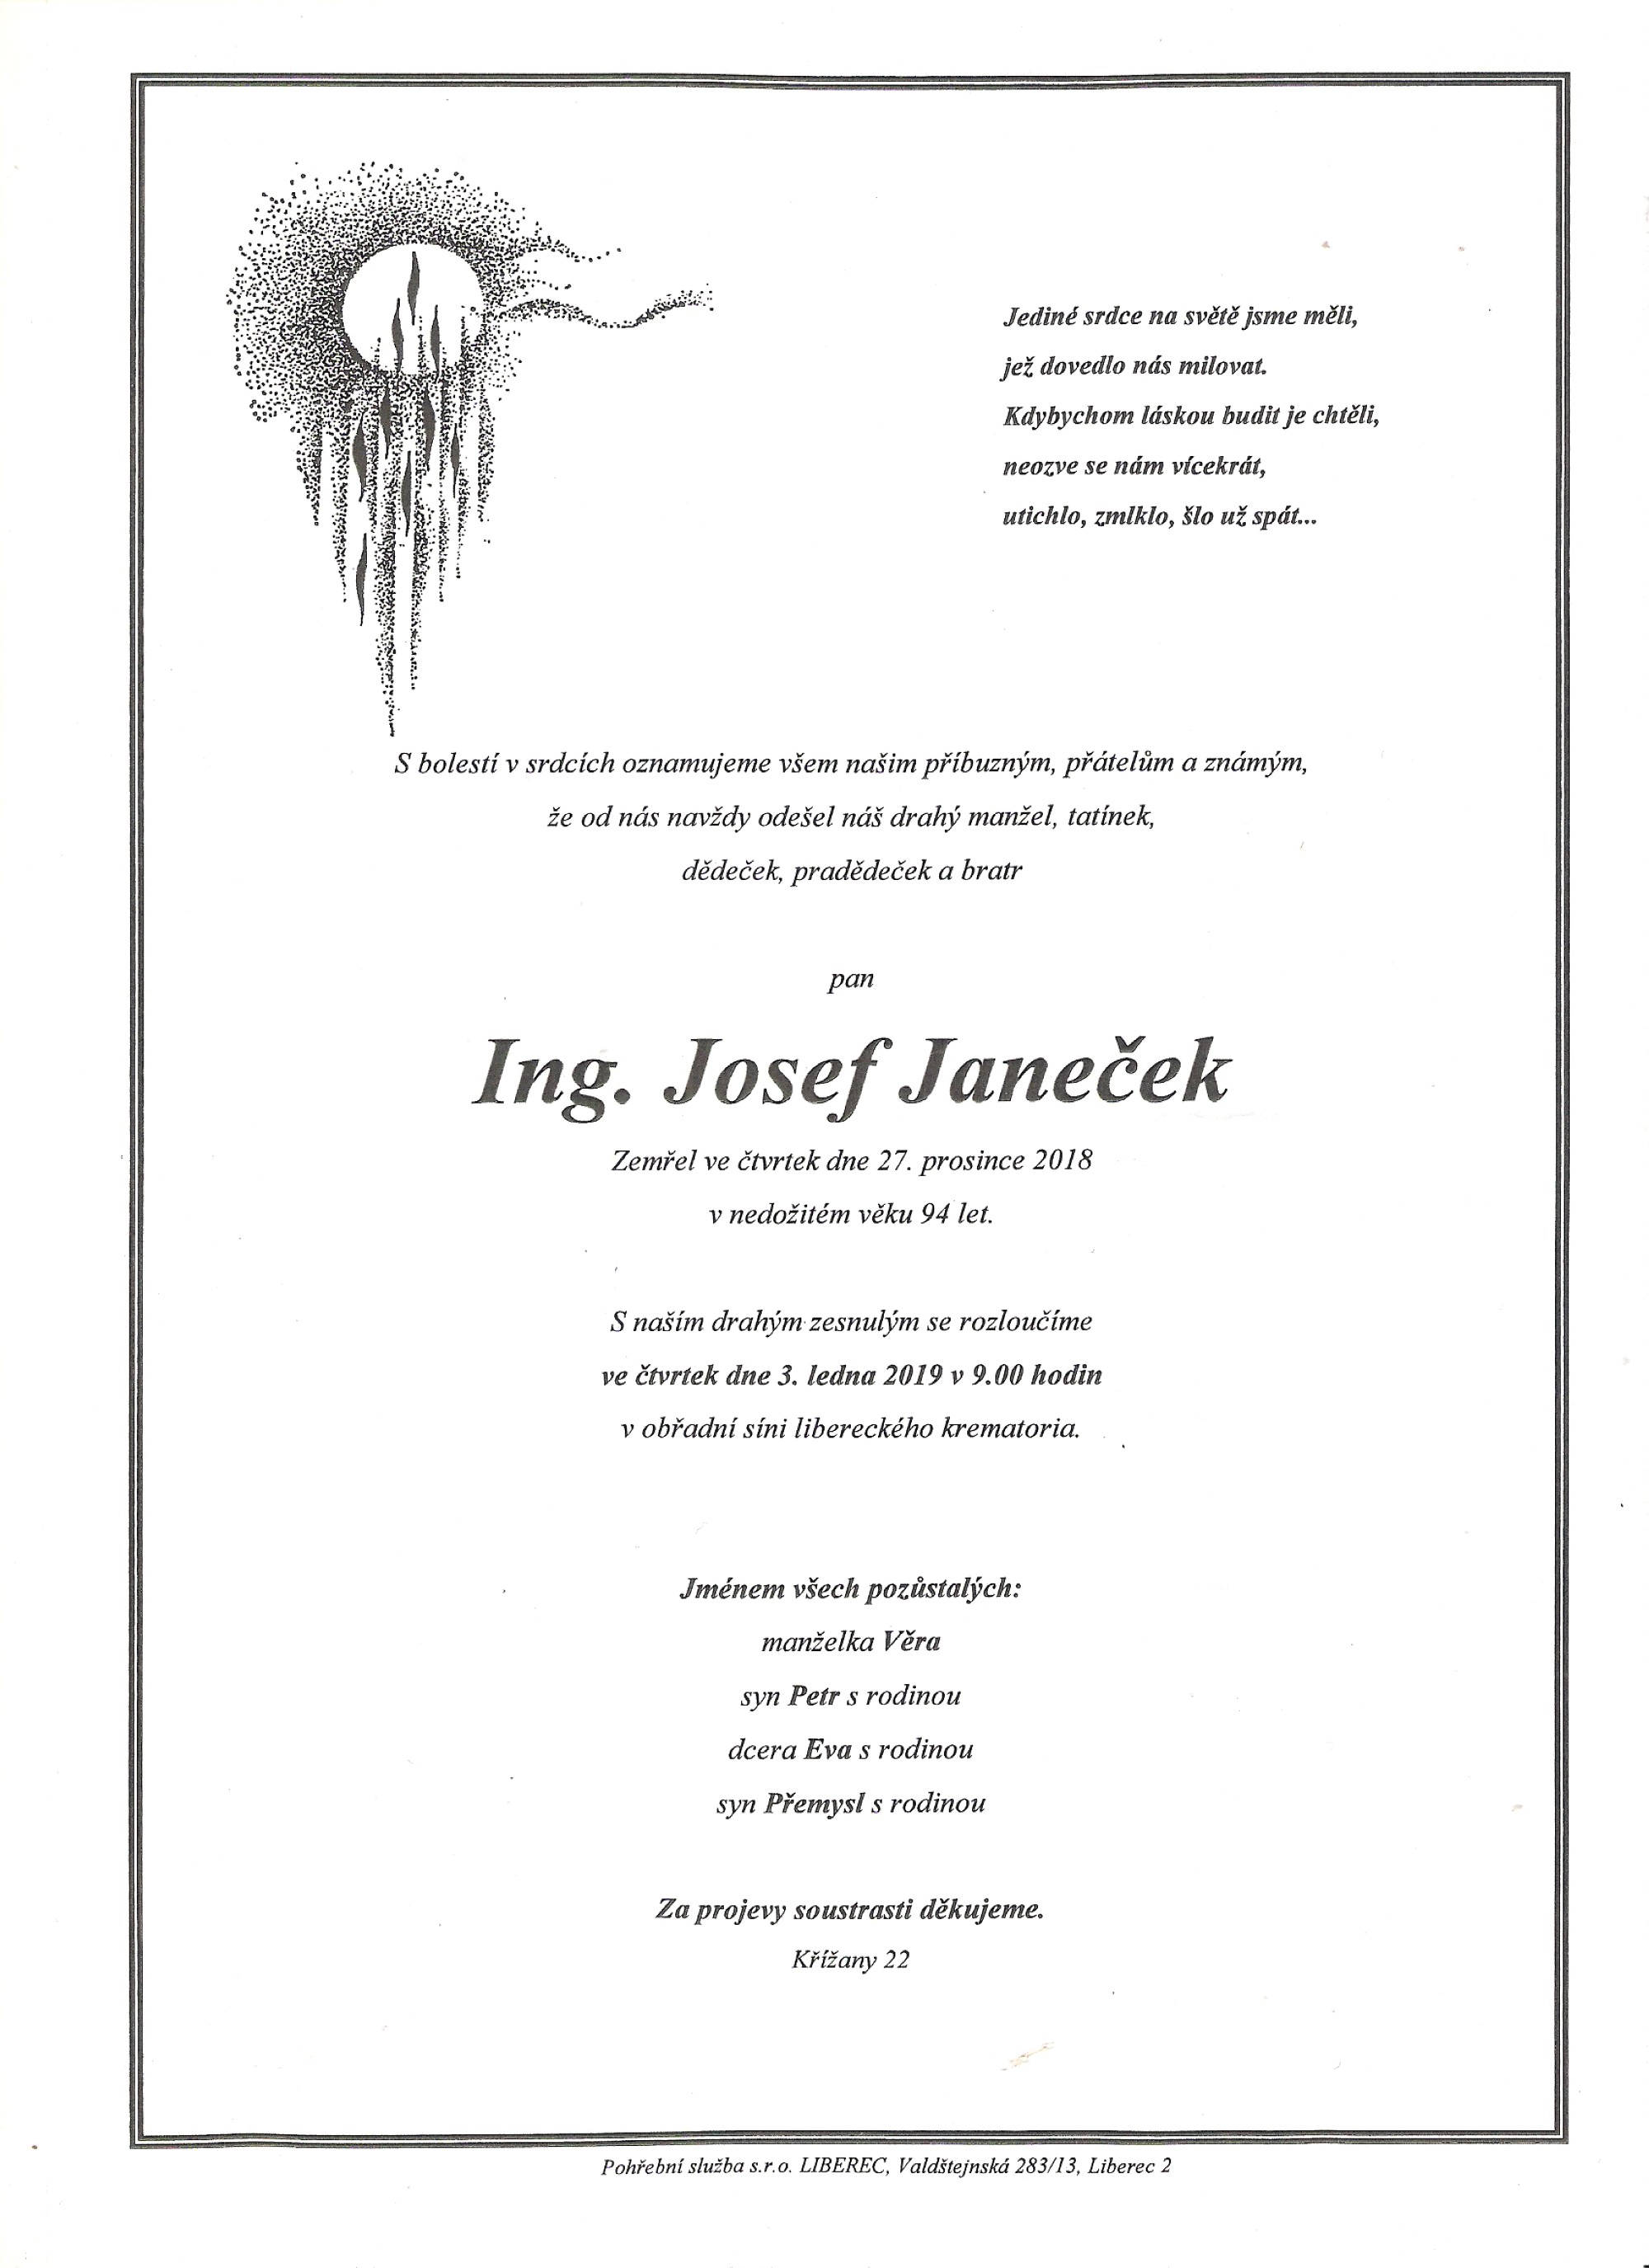 Ing. Josef Janeček